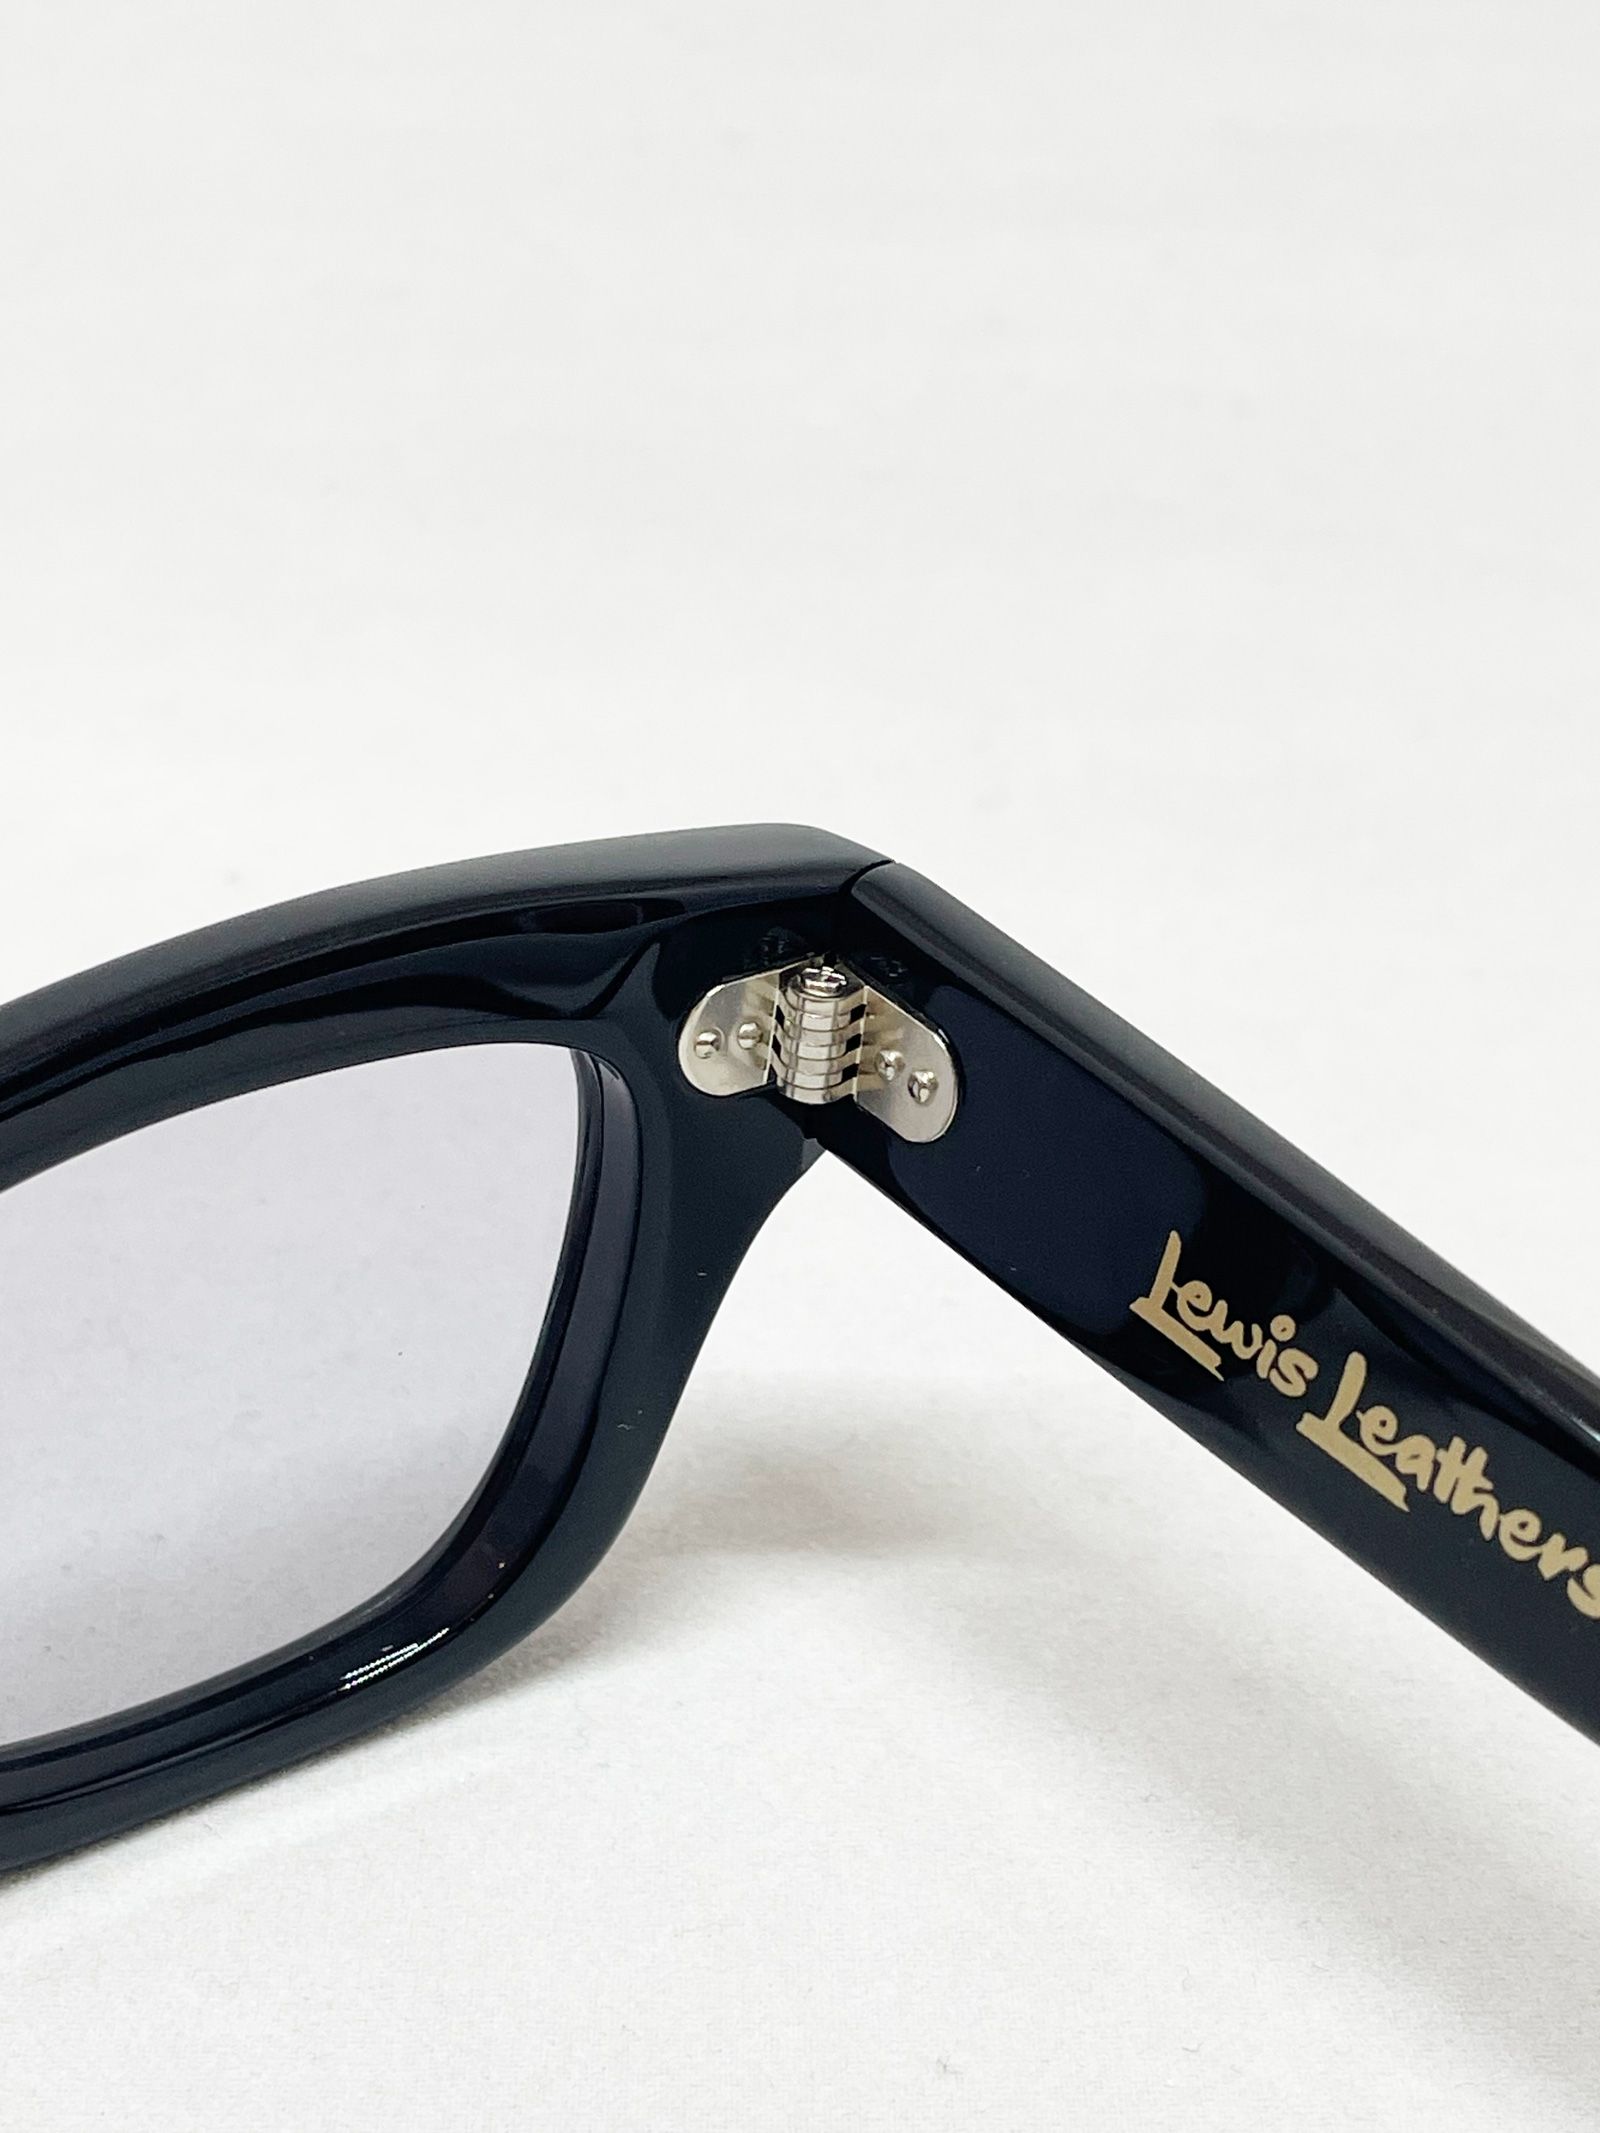 【即日発送可能】EFFECTOR × Lewis Leathers Aviakit Eyewear Silver Hinges レンズ(スモーク)